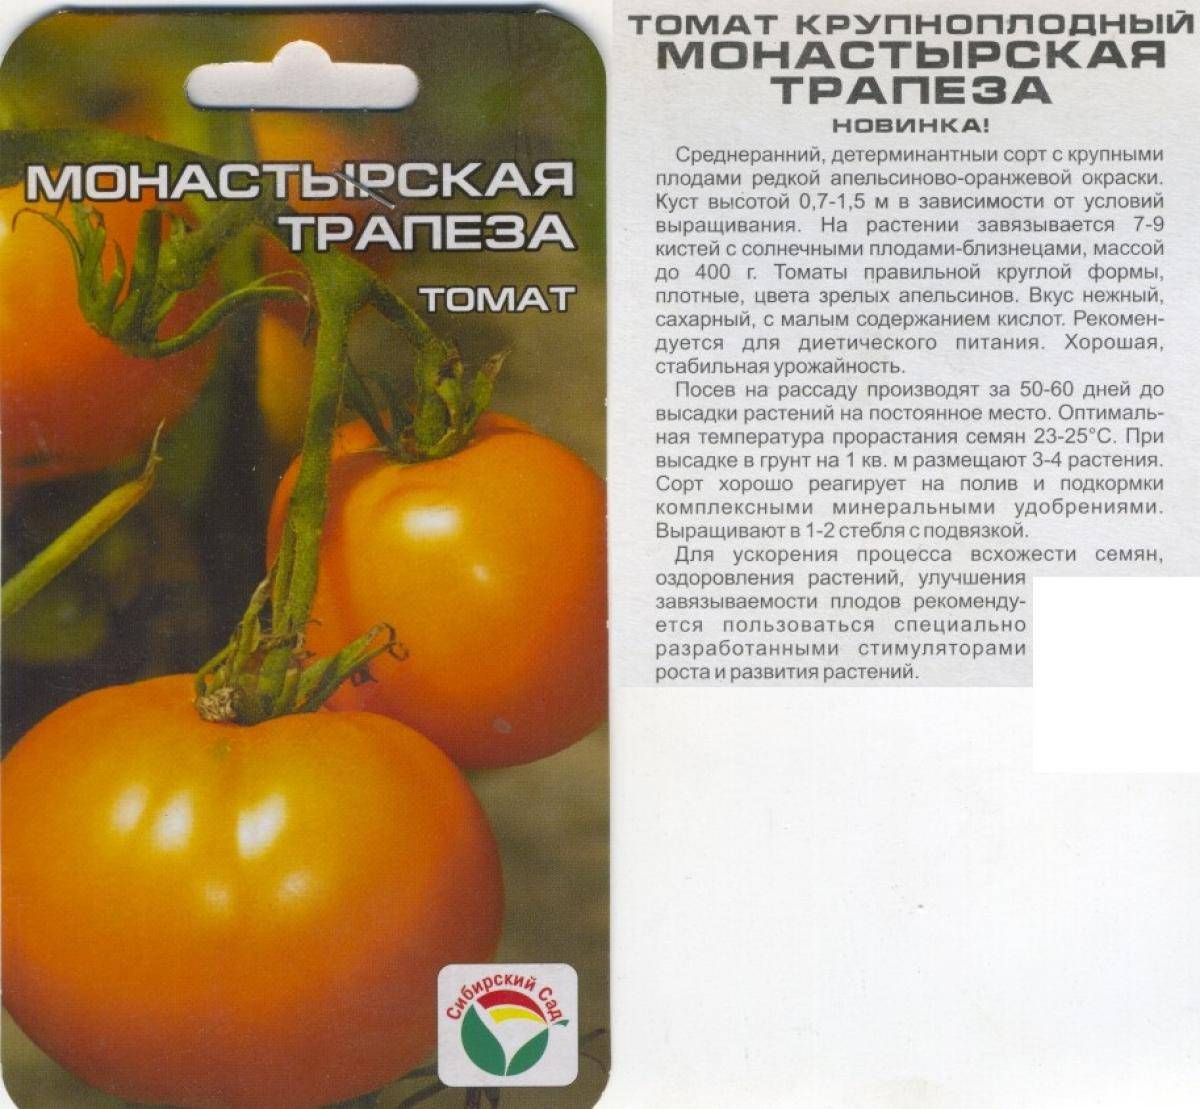 Томат золотой поток f1: характеристика и описание сорта, фото плодов черри, отзывы об урожайности помидоров